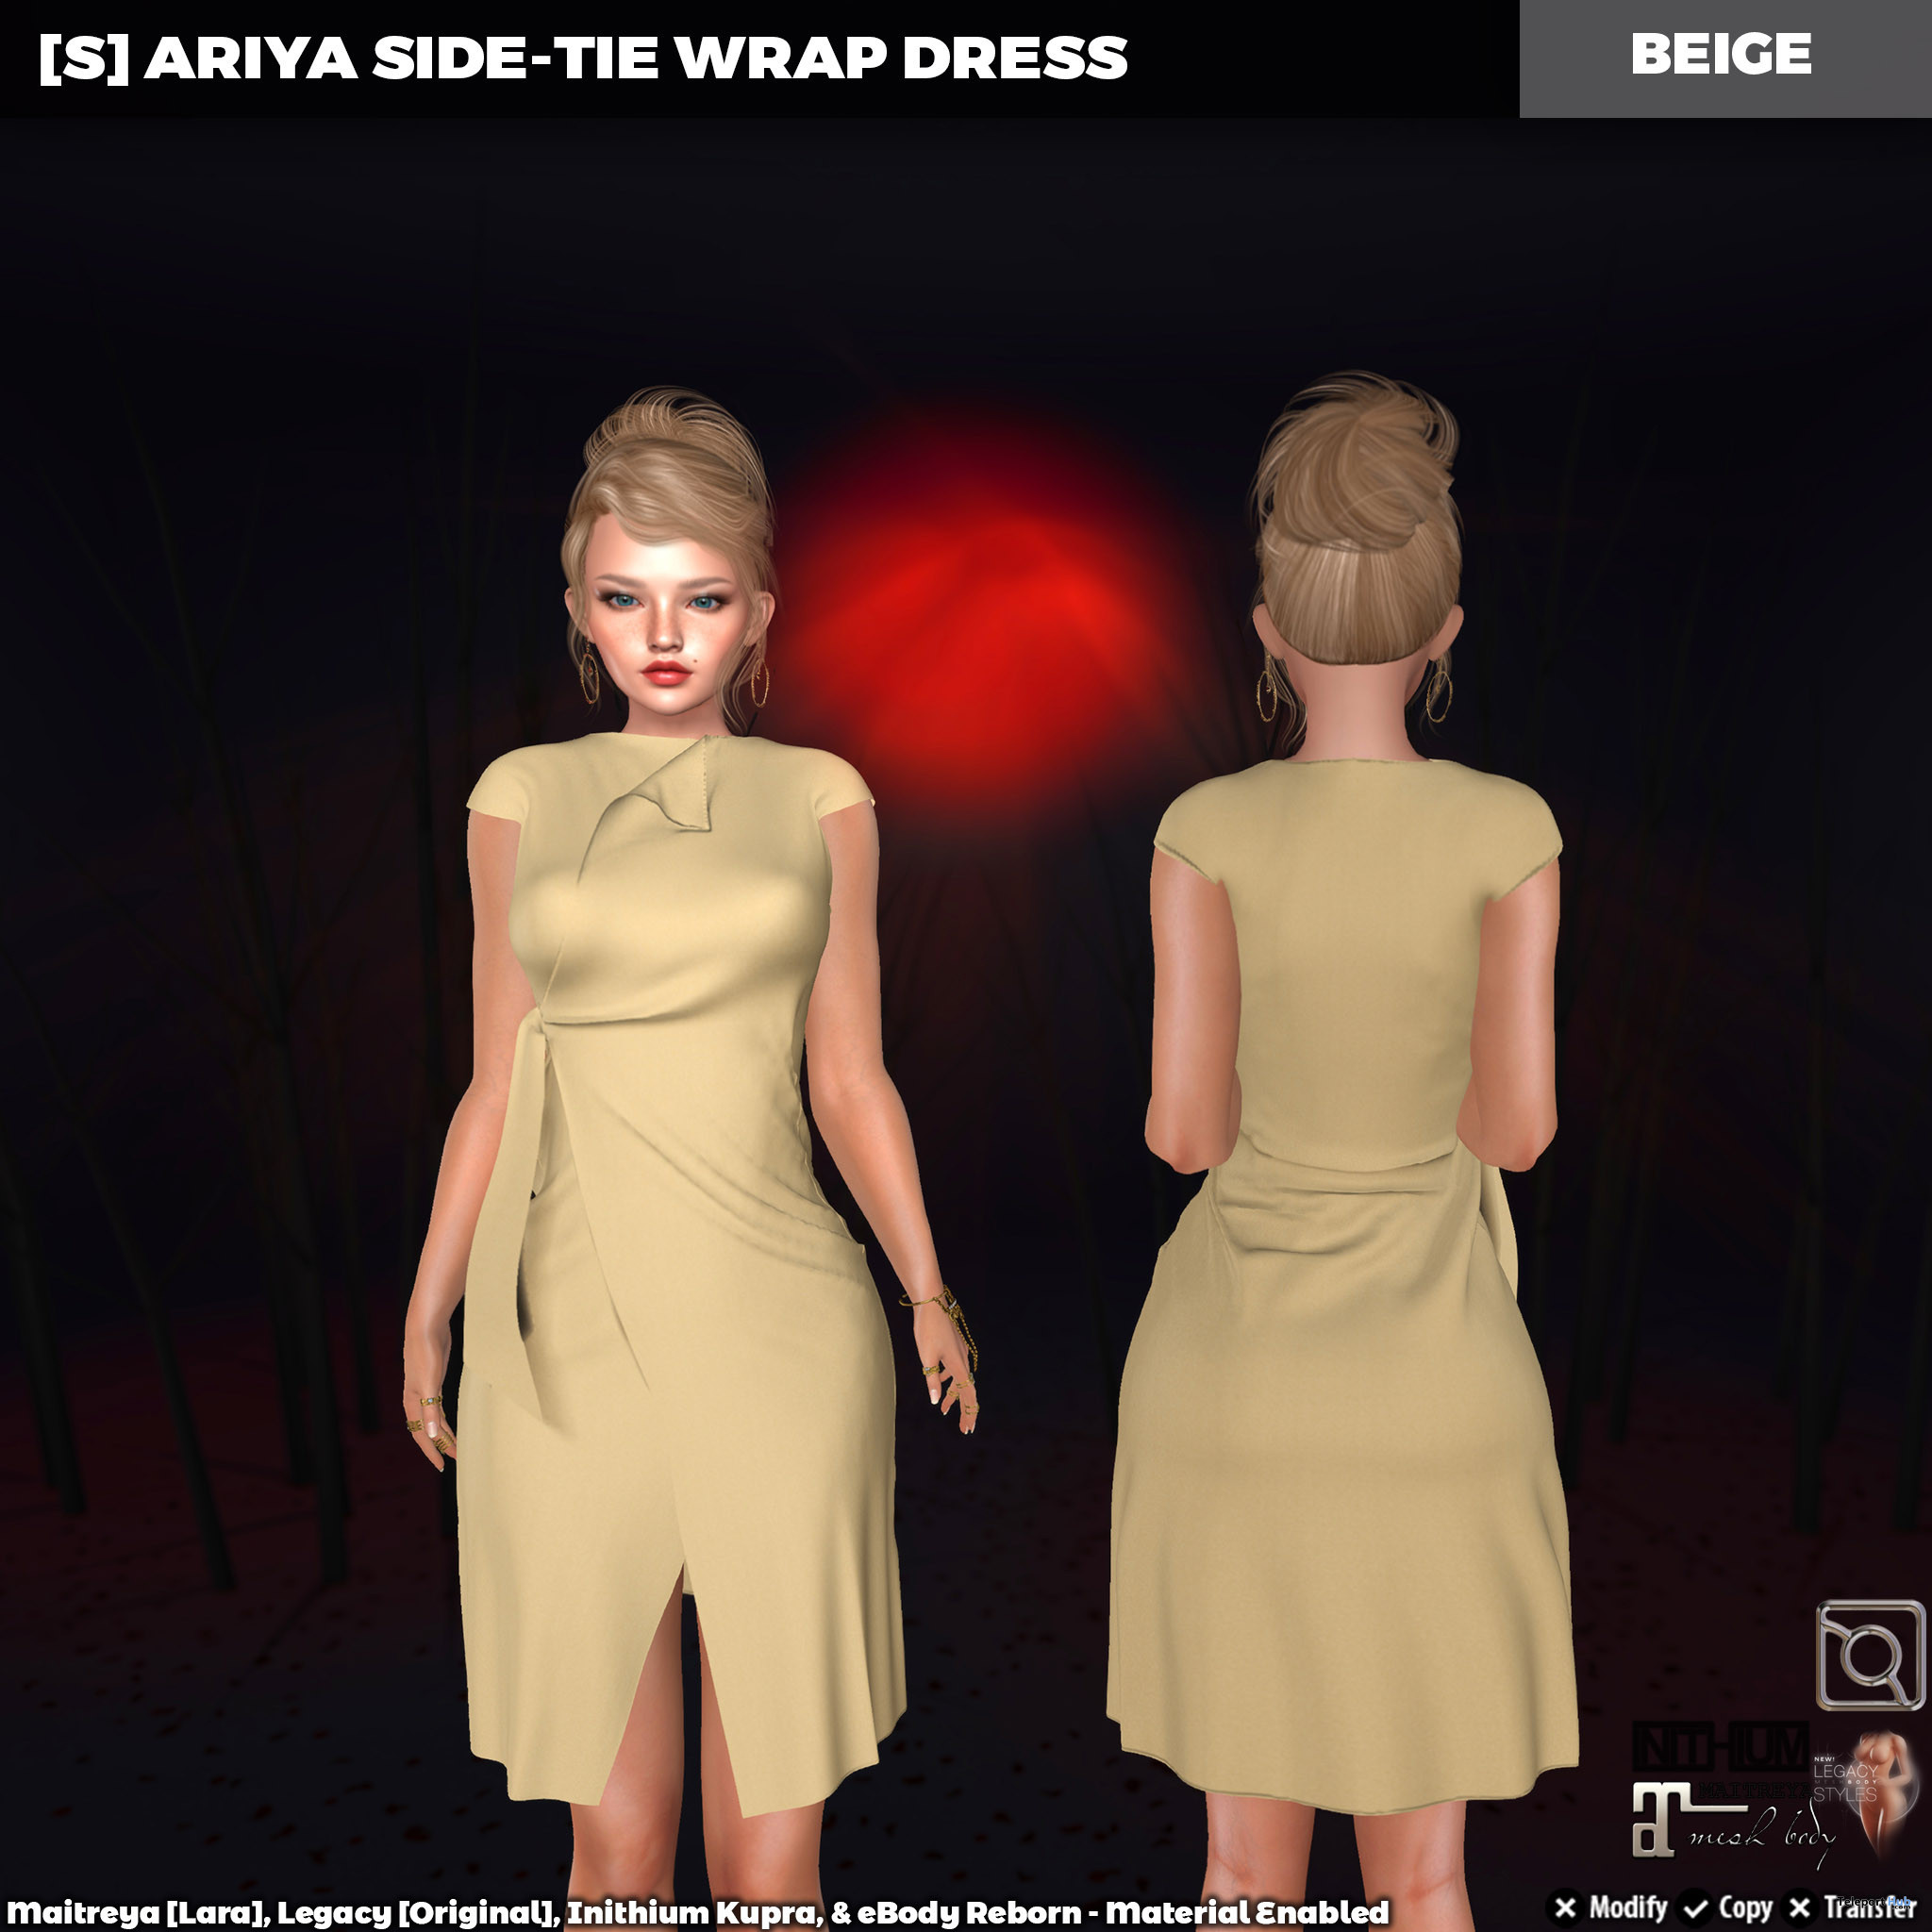 New Release: [S] Ariya Side-Tie Wrap Dress by [satus Inc] - Teleport Hub - teleporthub.com